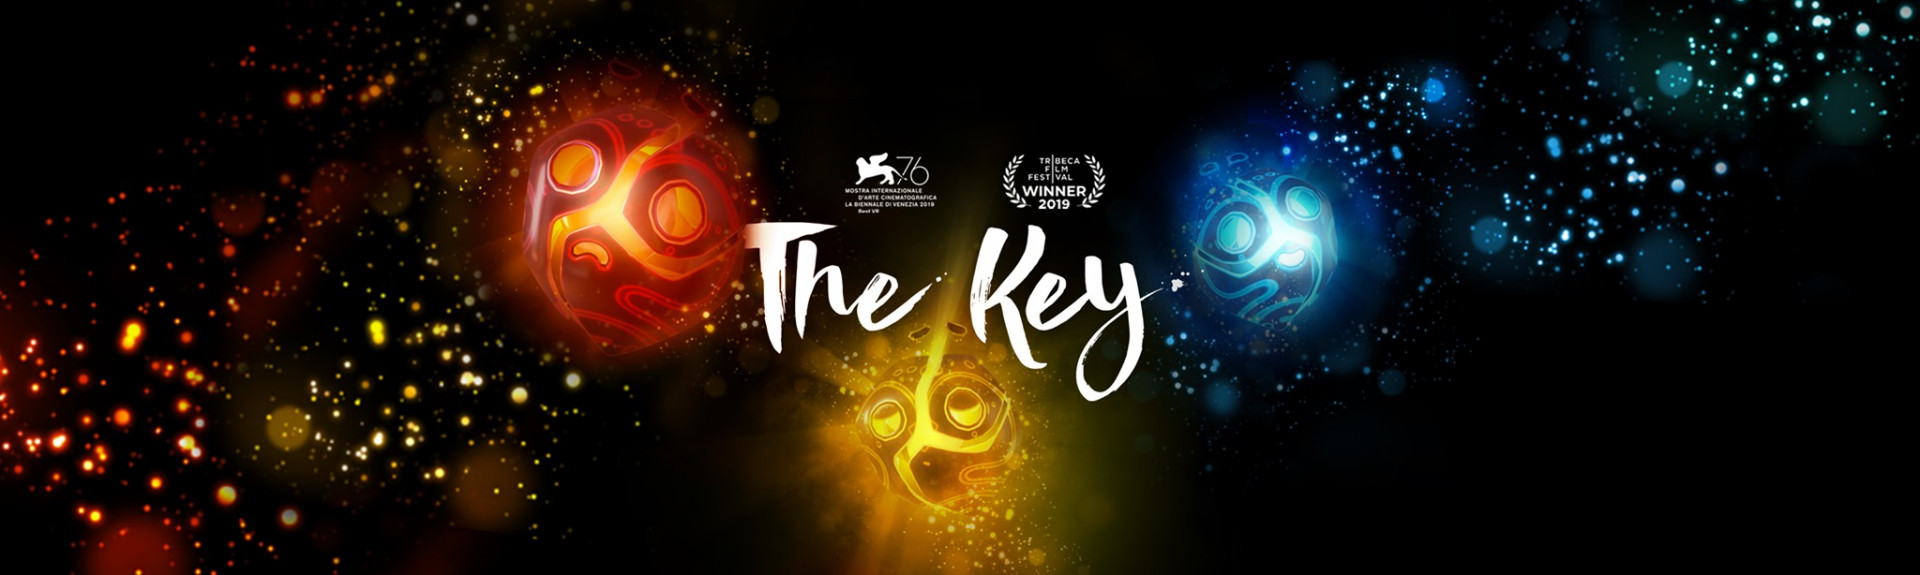 The Key (la llave)